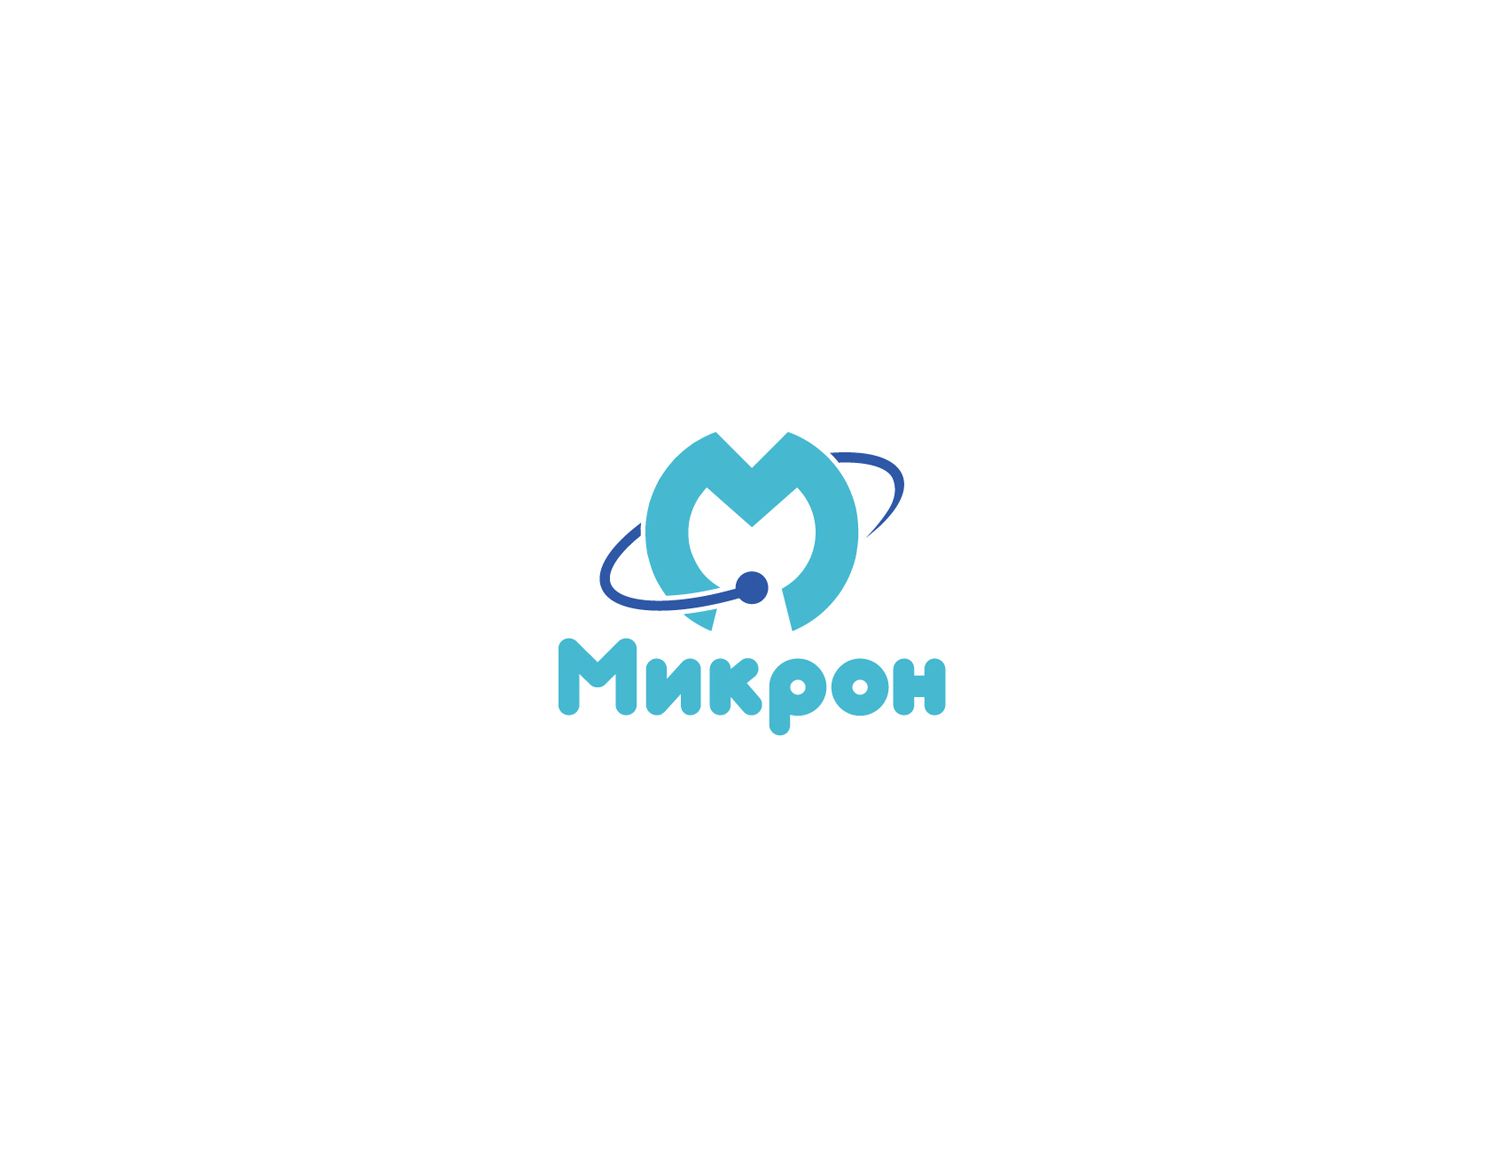 Логотип для сервисного центря по ремонту техники - Микрон - дизайнер jampa